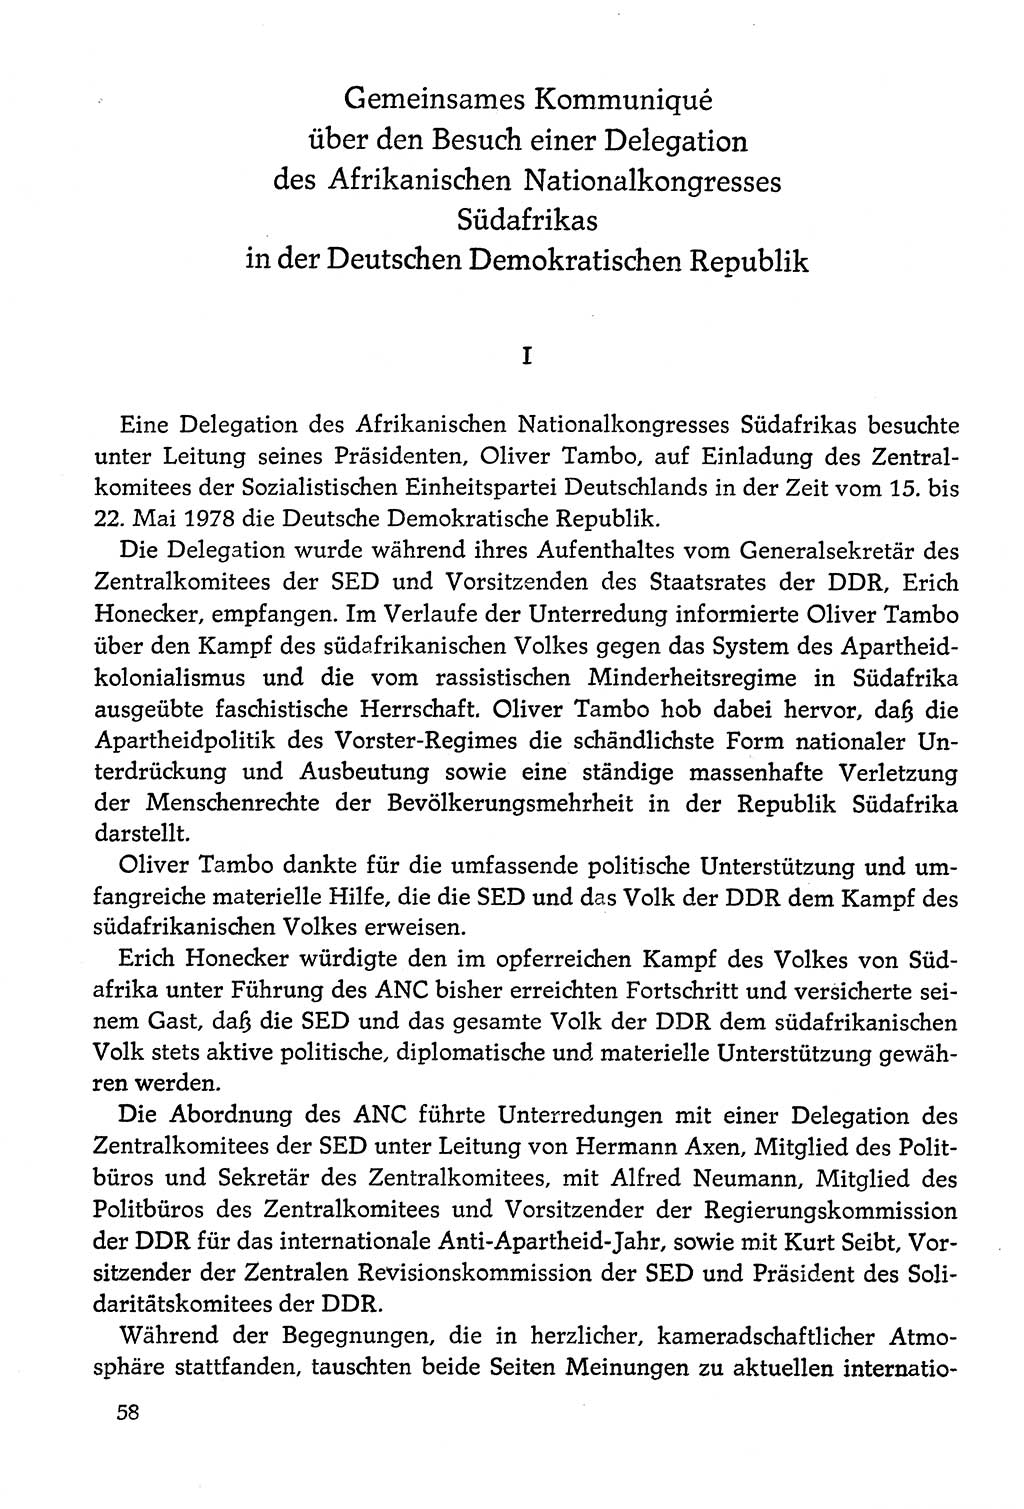 Dokumente der Sozialistischen Einheitspartei Deutschlands (SED) [Deutsche Demokratische Republik (DDR)] 1978-1979, Seite 58 (Dok. SED DDR 1978-1979, S. 58)